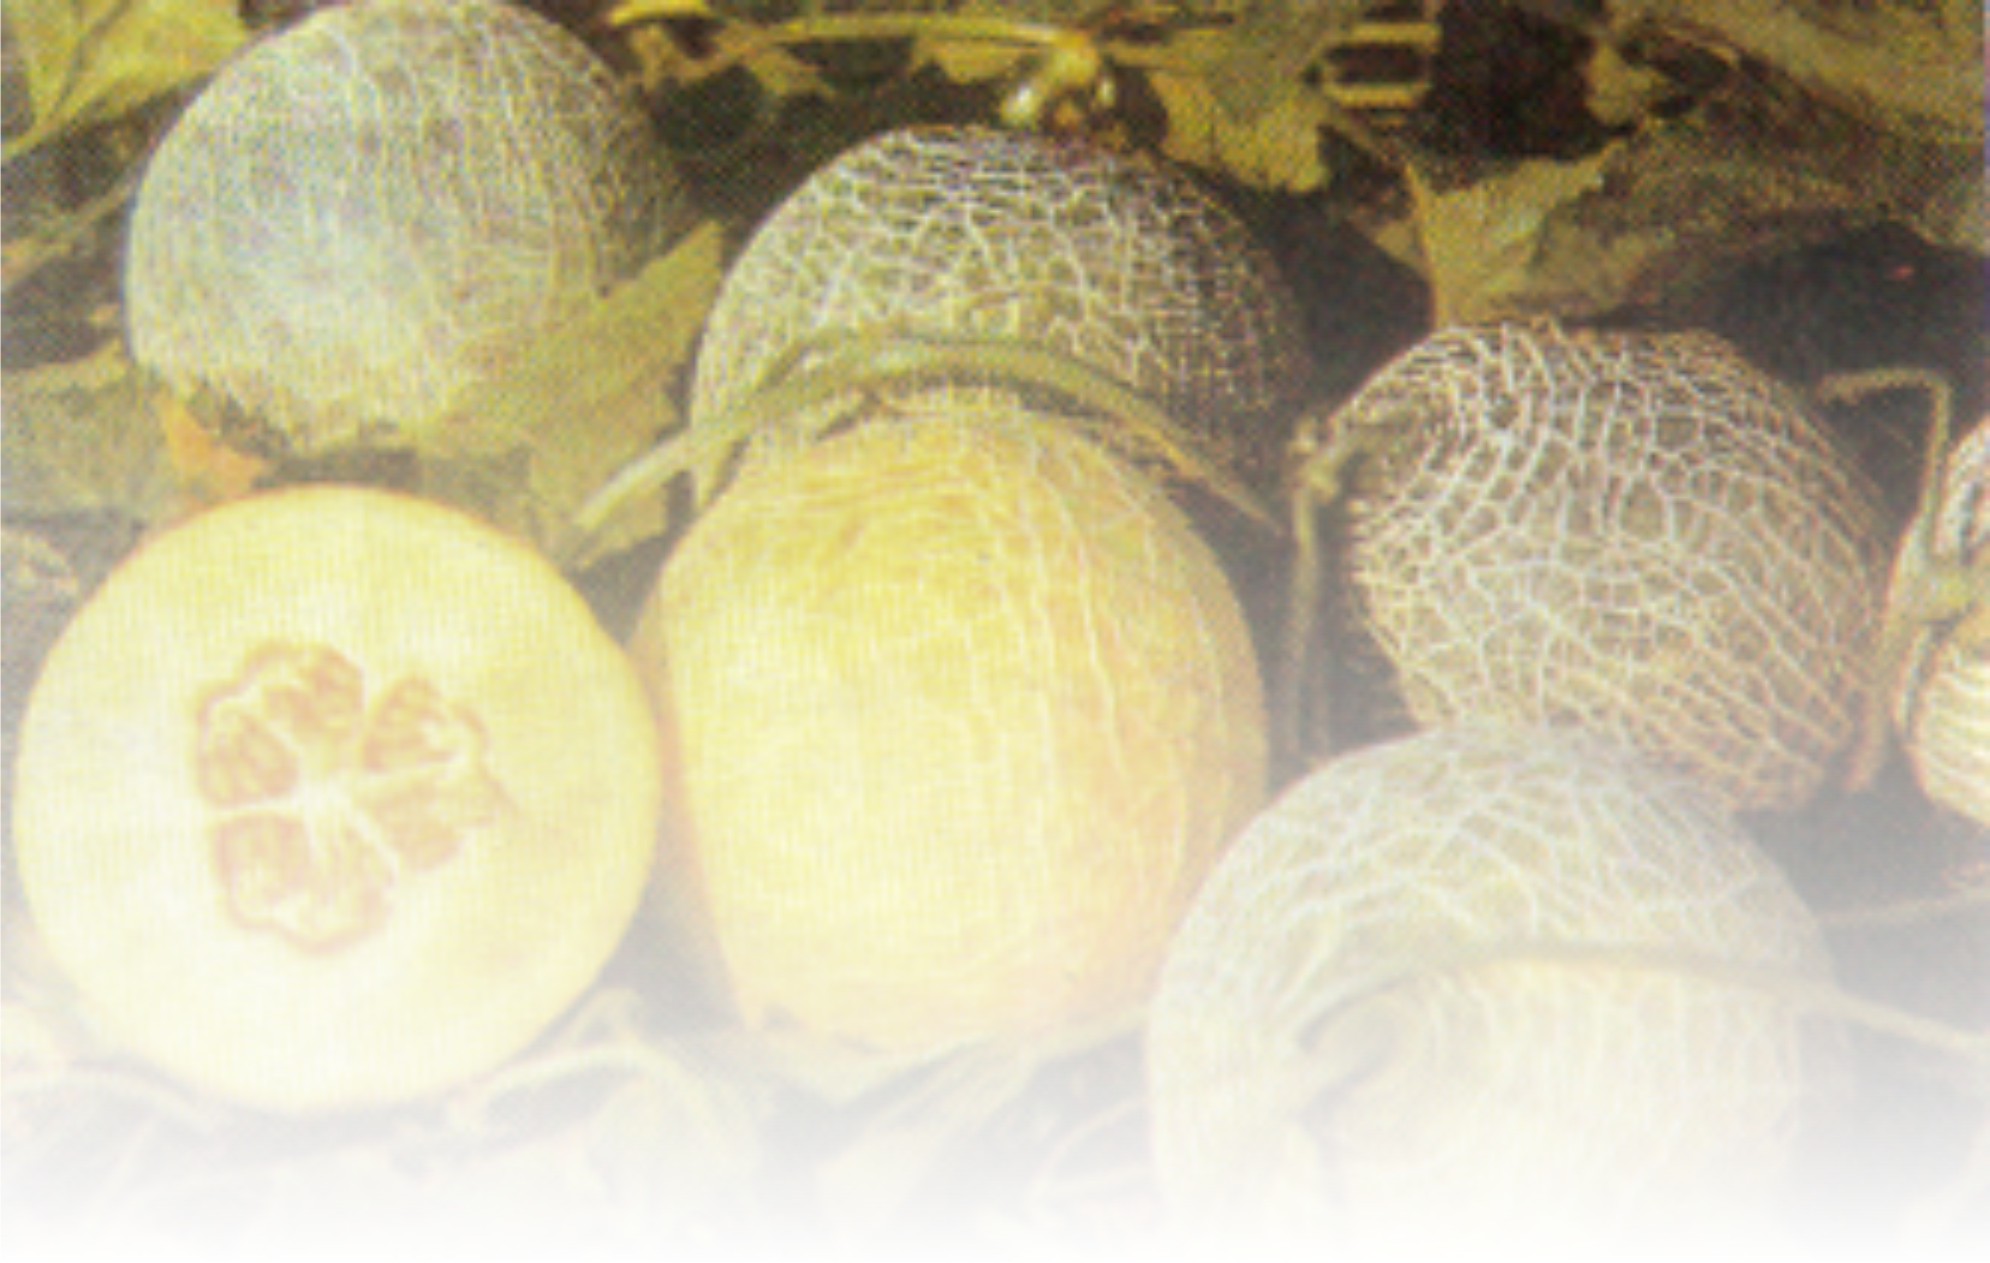 ARTIKEL TENTANG Agribisnis Melon